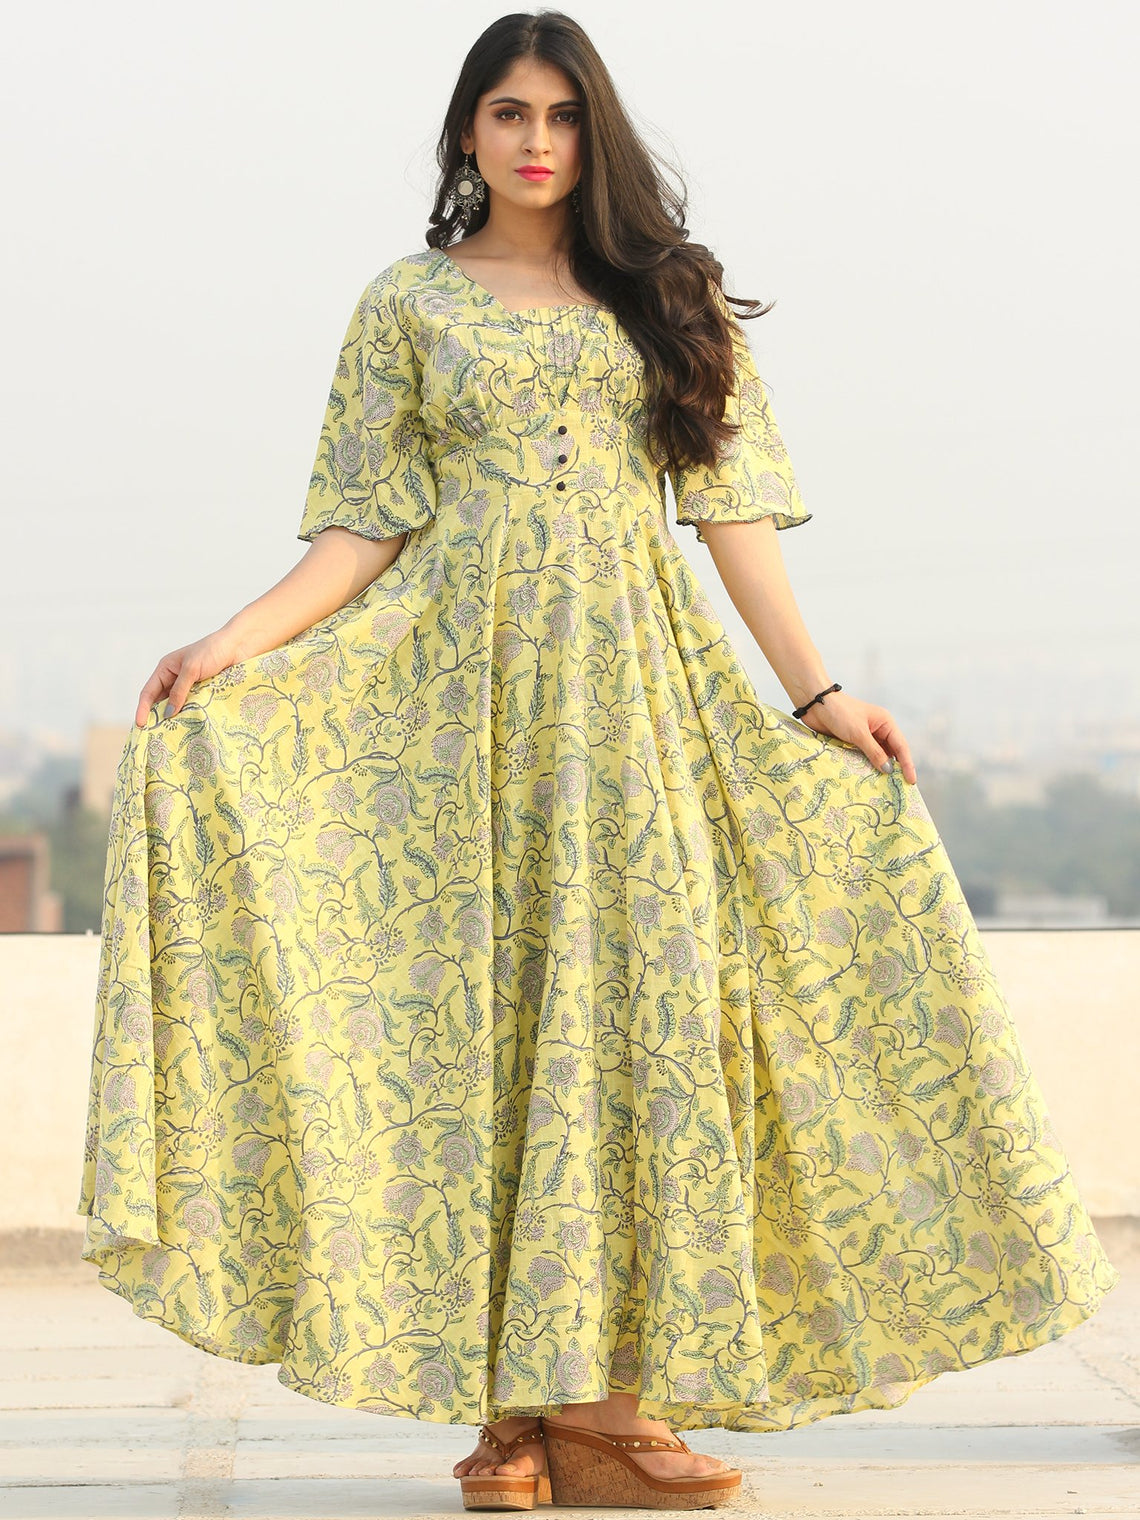 Gulzar Johi - Urave Cut Long Dress With Deep Back - D458F2286 – InduBindu